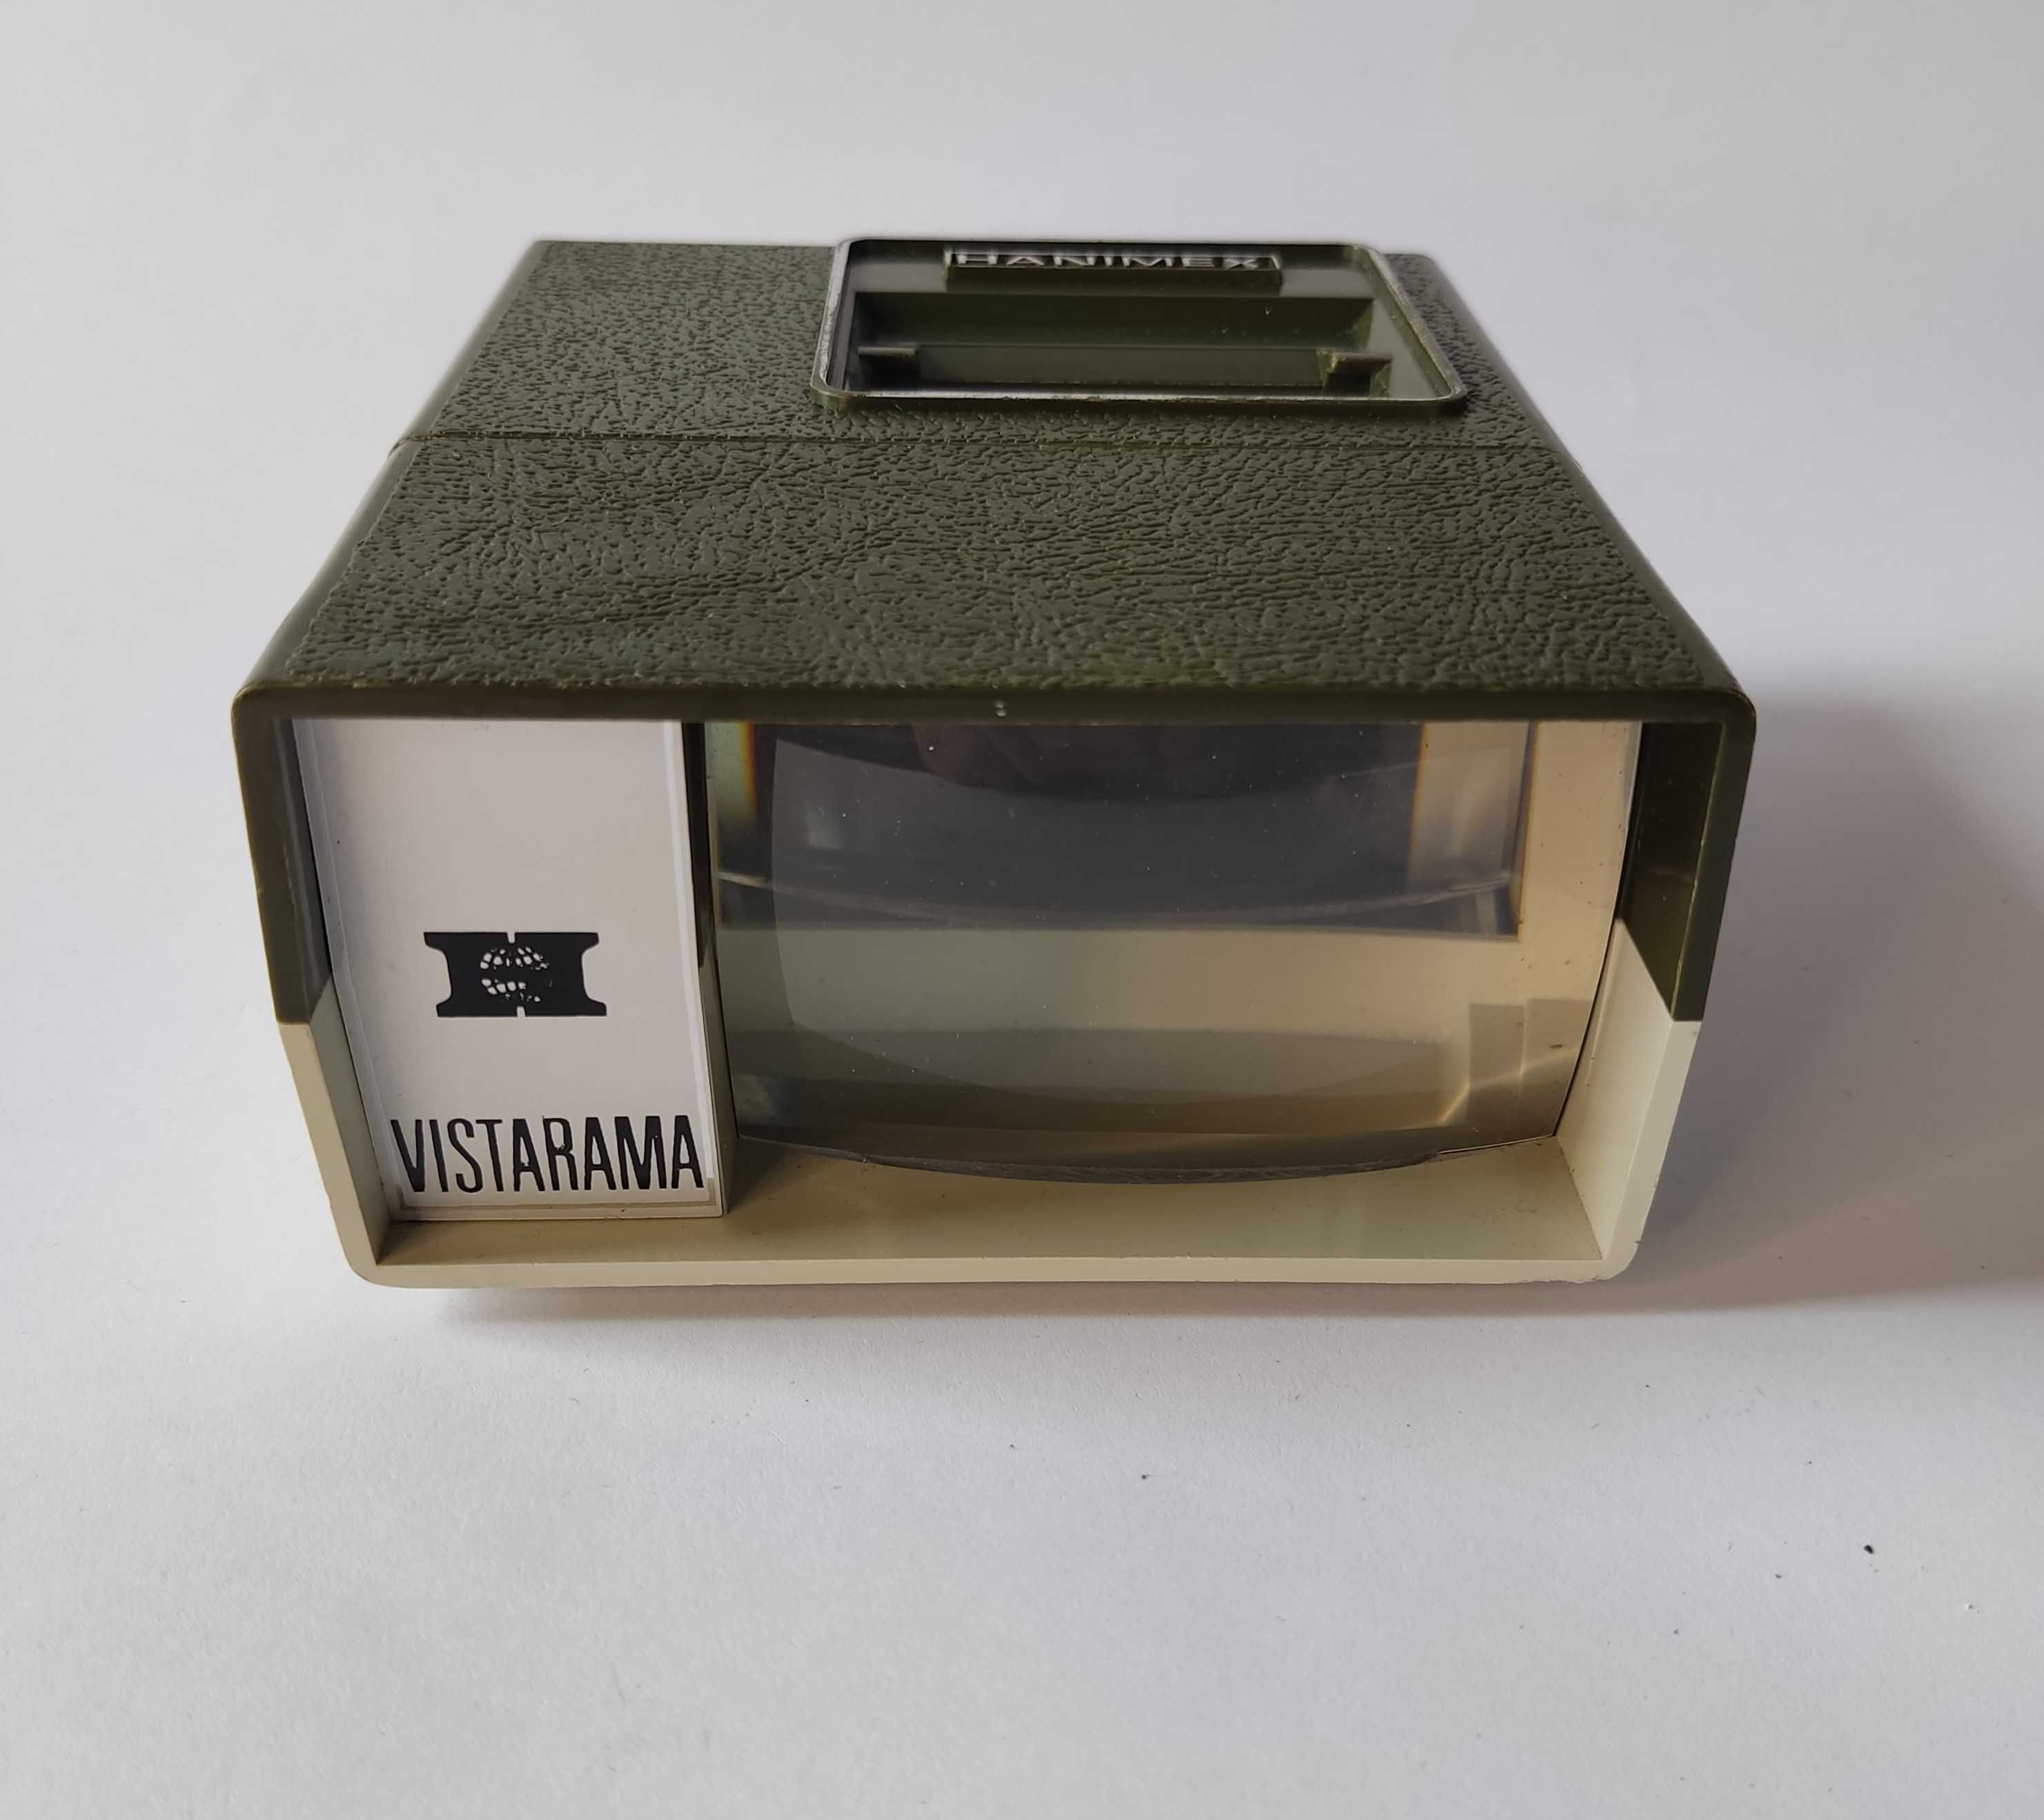 Przeglądarka slajdów bateryjna- Vistarama-Hanimex - kolekcjonerska